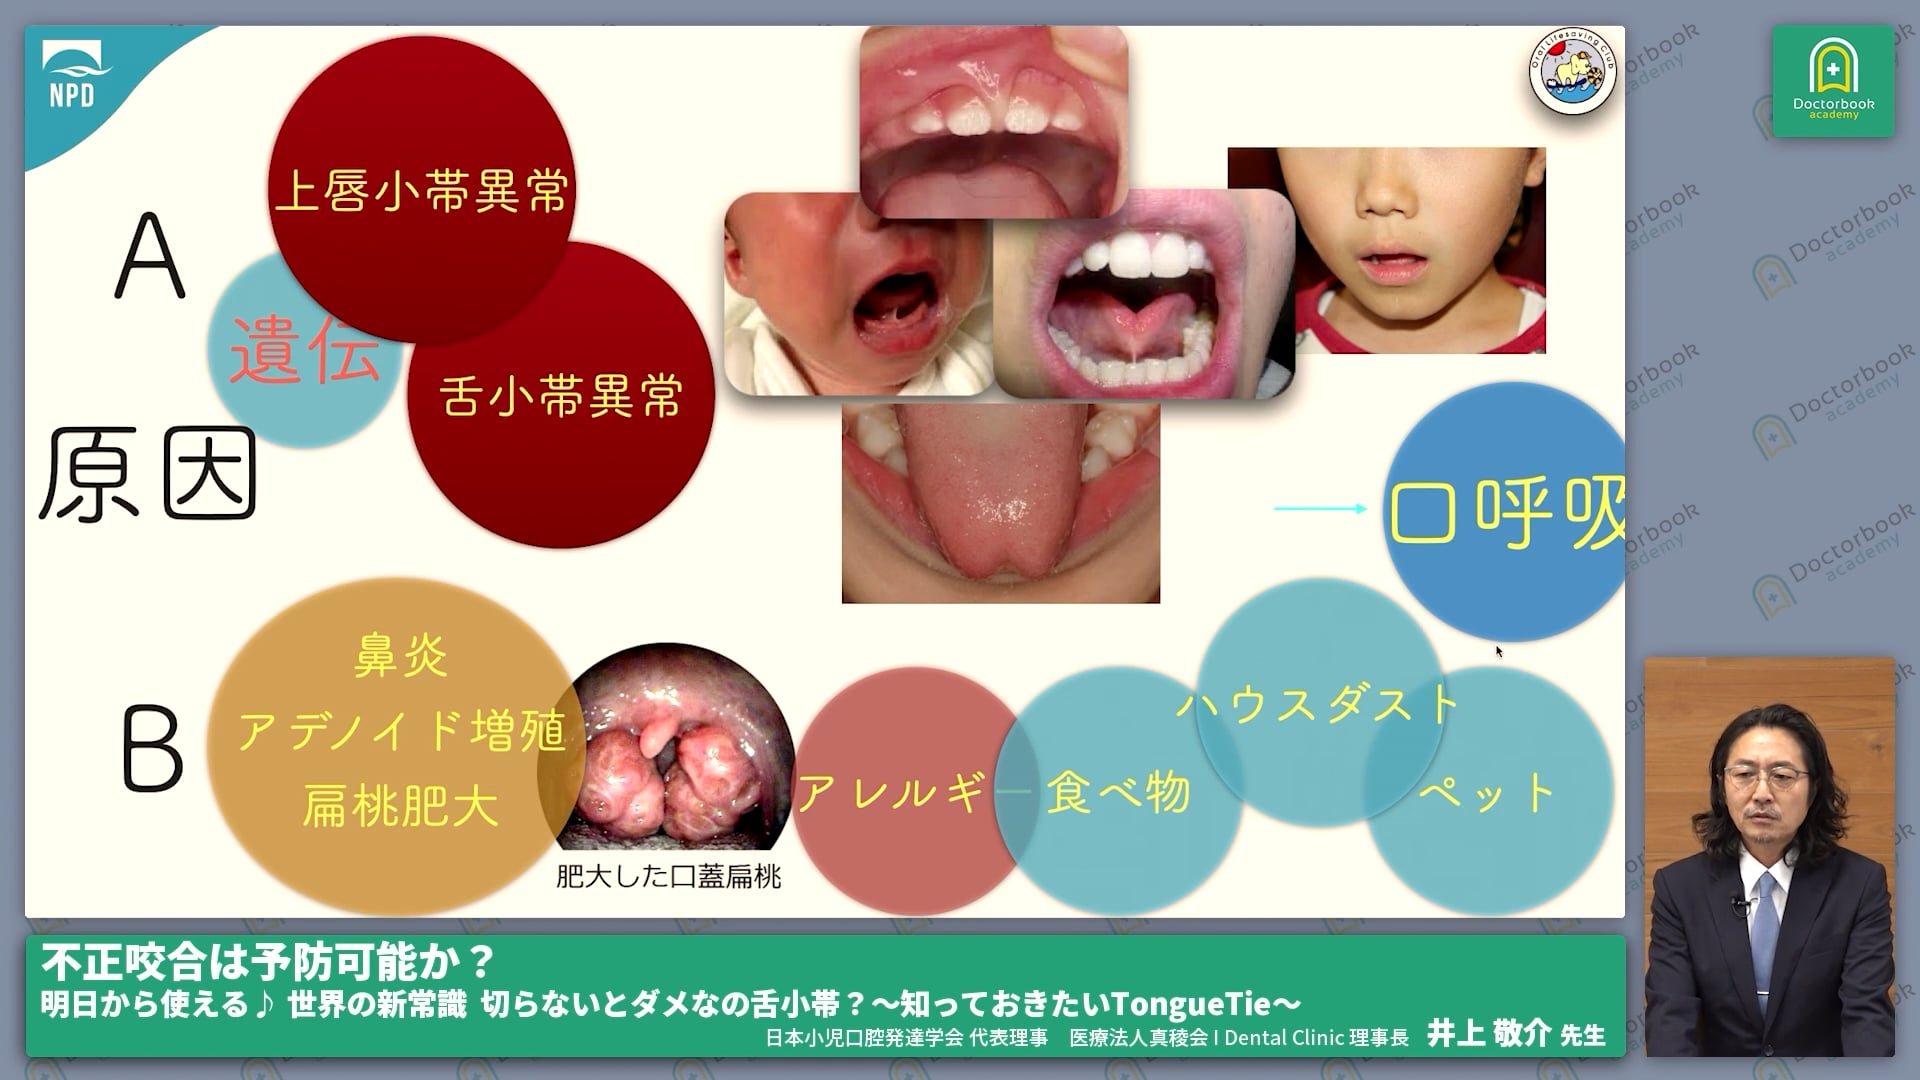 舌小帯の口腔機能発達不全症に対する影響 #1